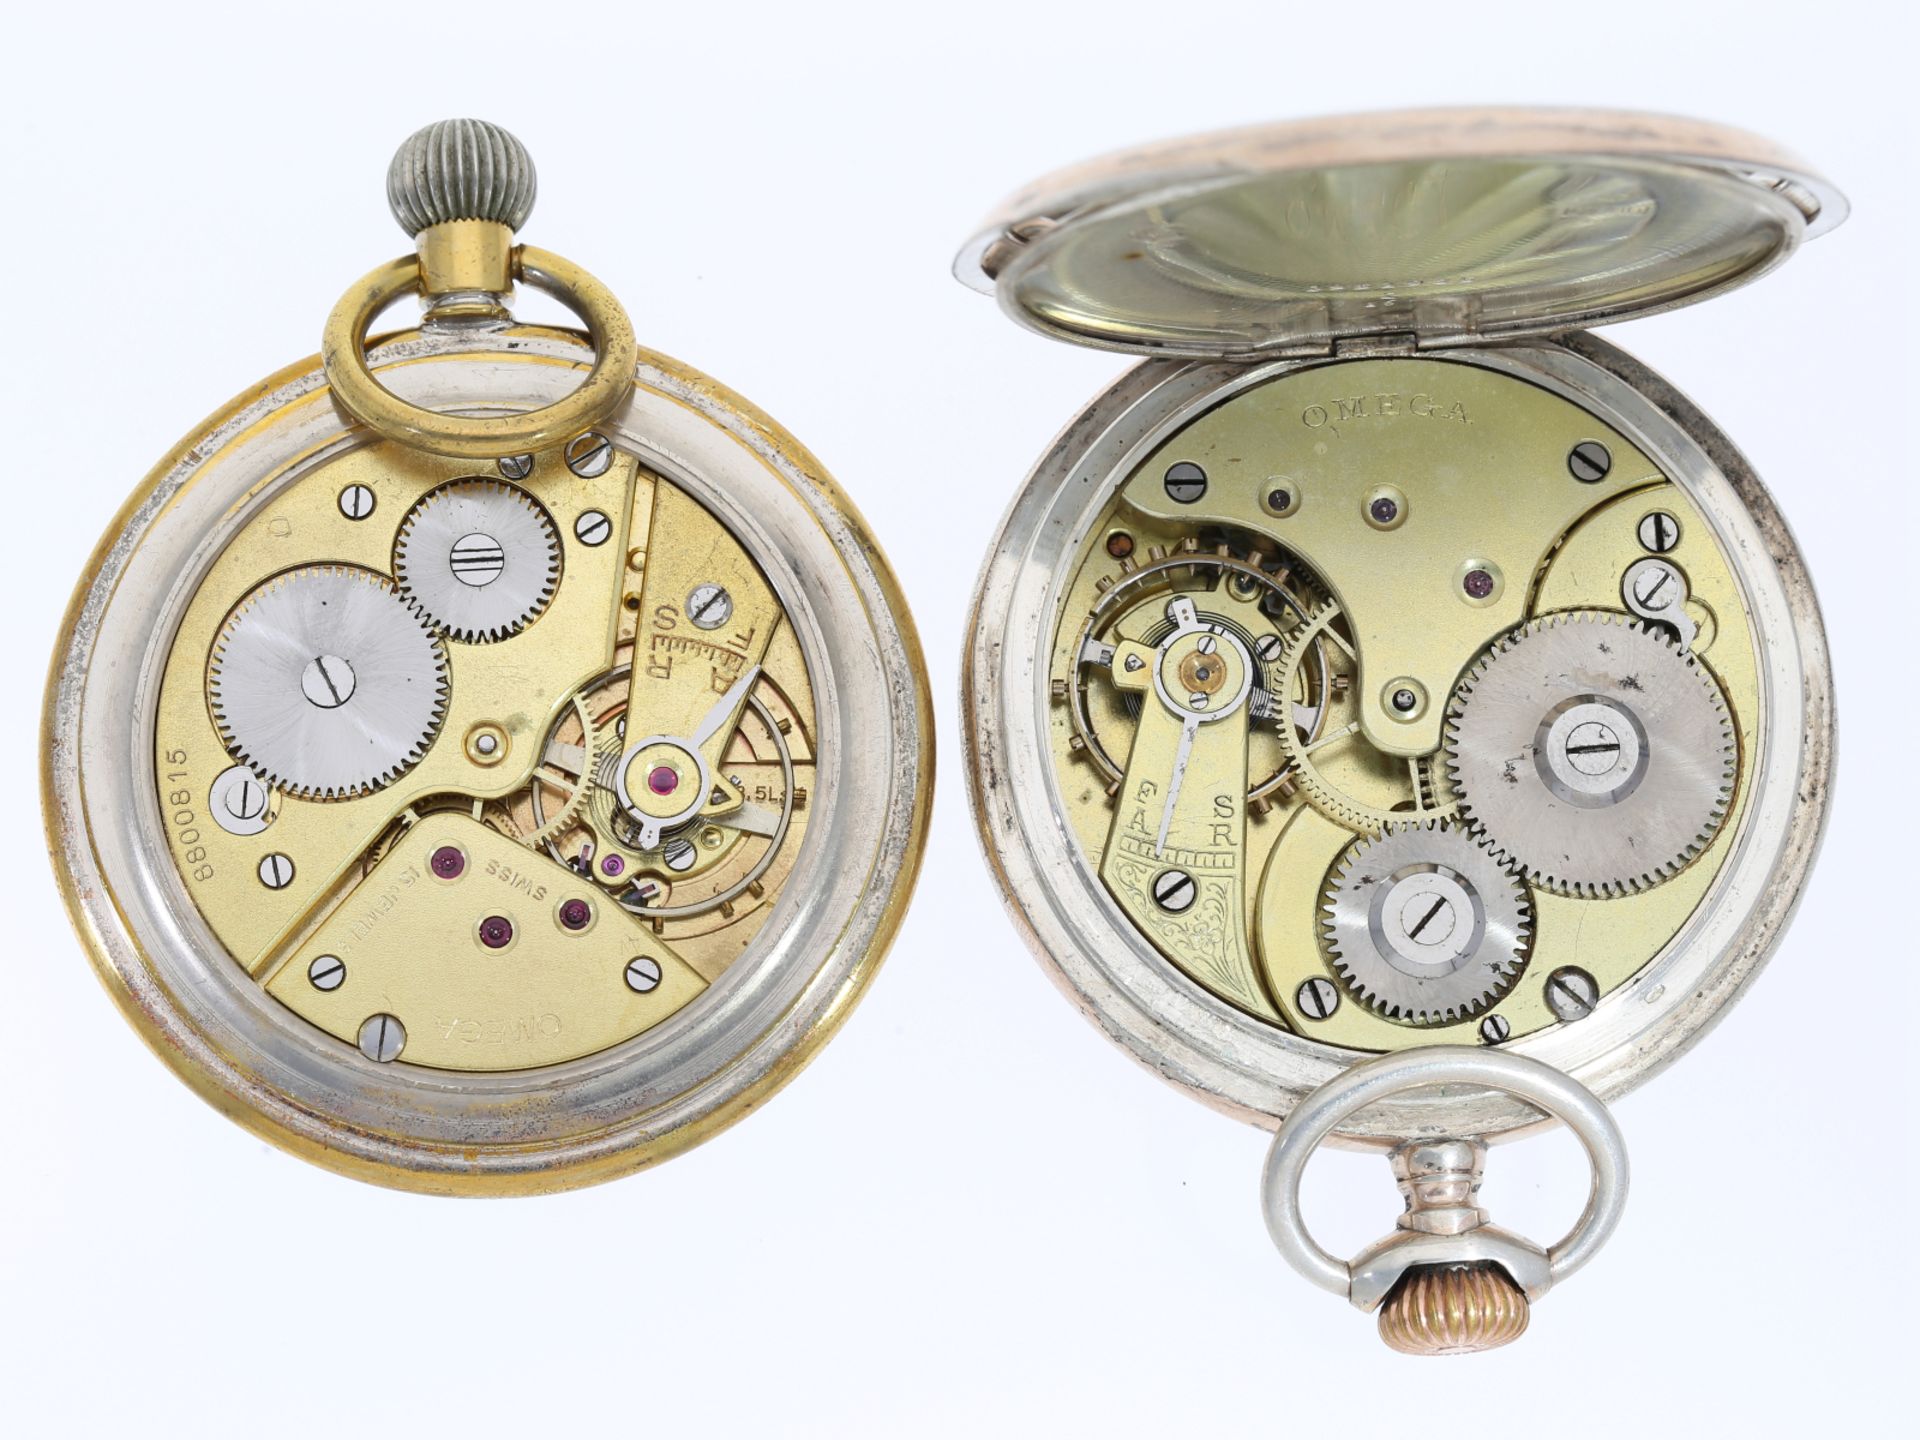 Taschenuhr: 2 Taschenuhren von Omega, darunter eine seltene Militäruhr, ca. 1905 und 1940 - Image 3 of 3